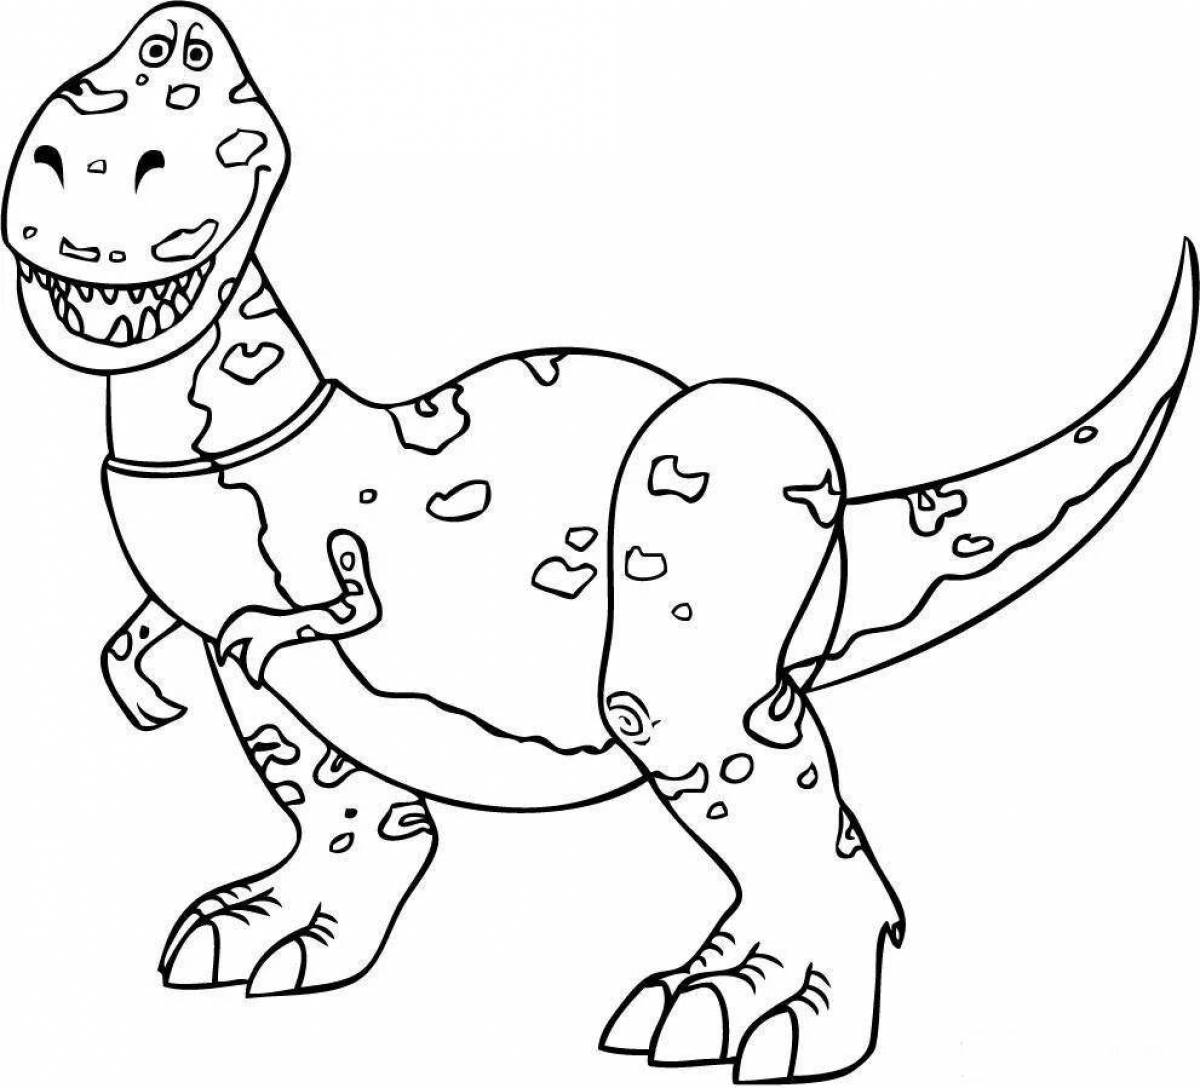 Coloring book humorous tarbosaurus boule